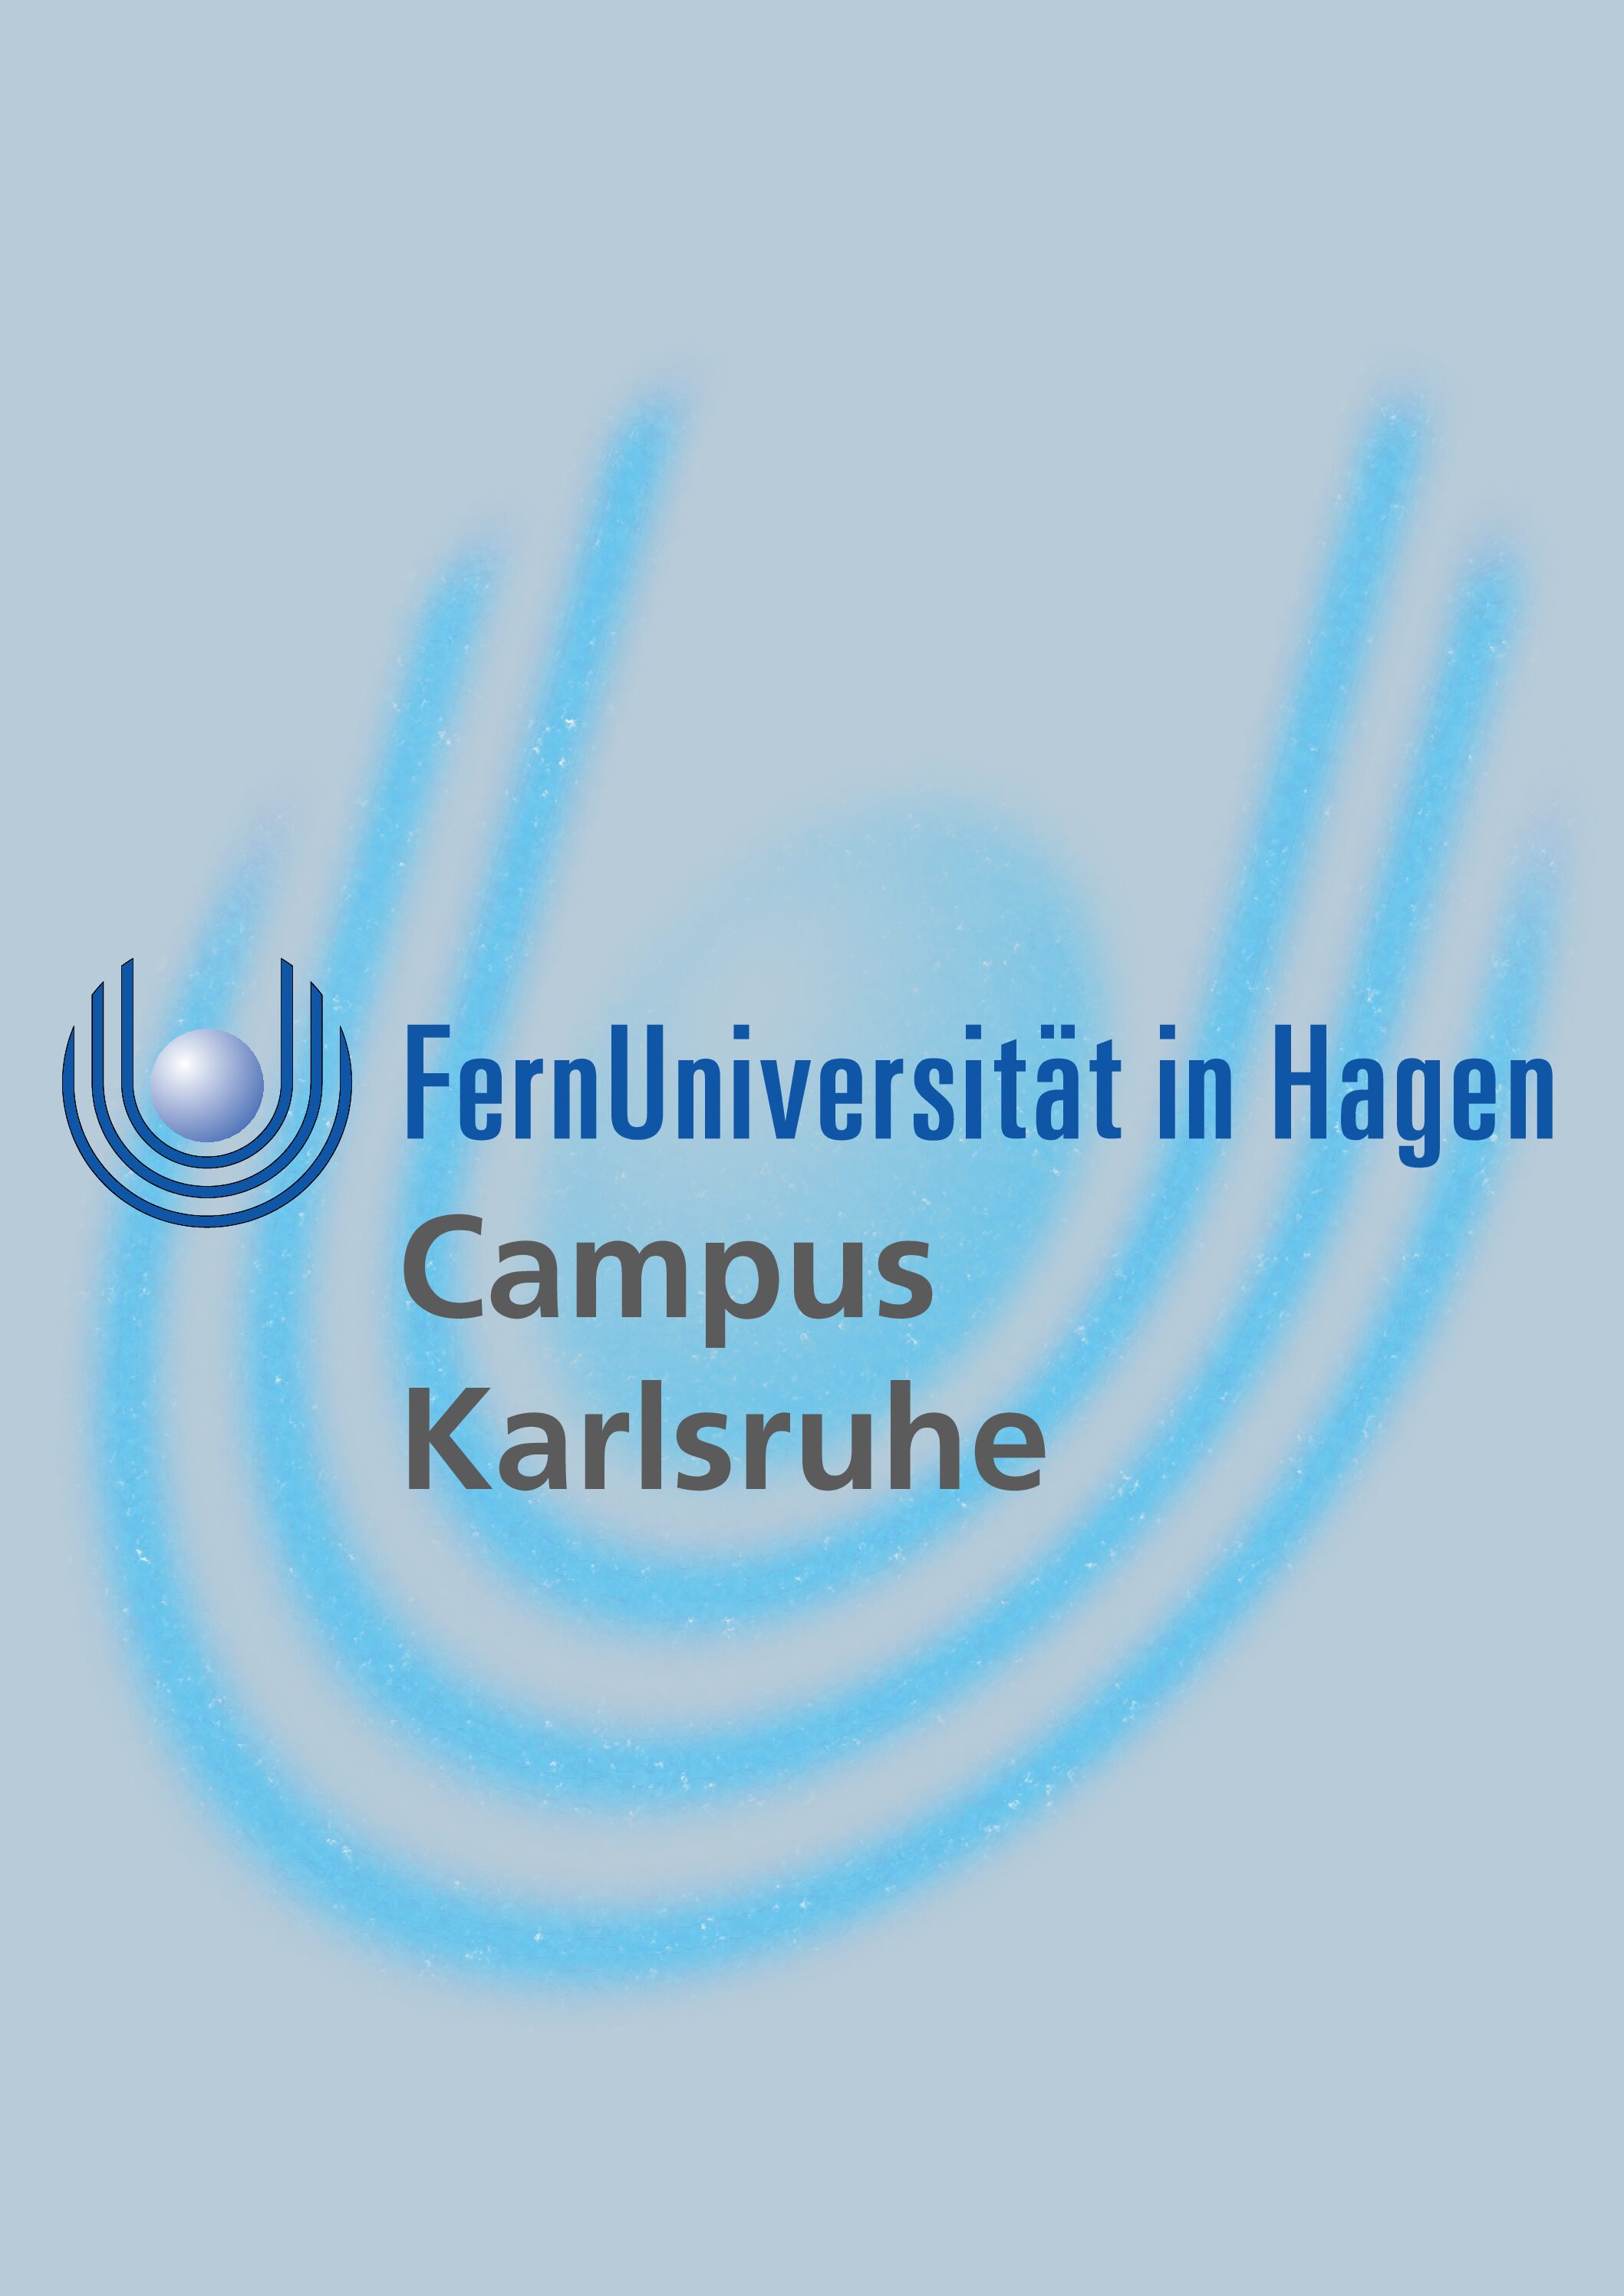 FernUniversität in Hagen – Campus Karlsruhe